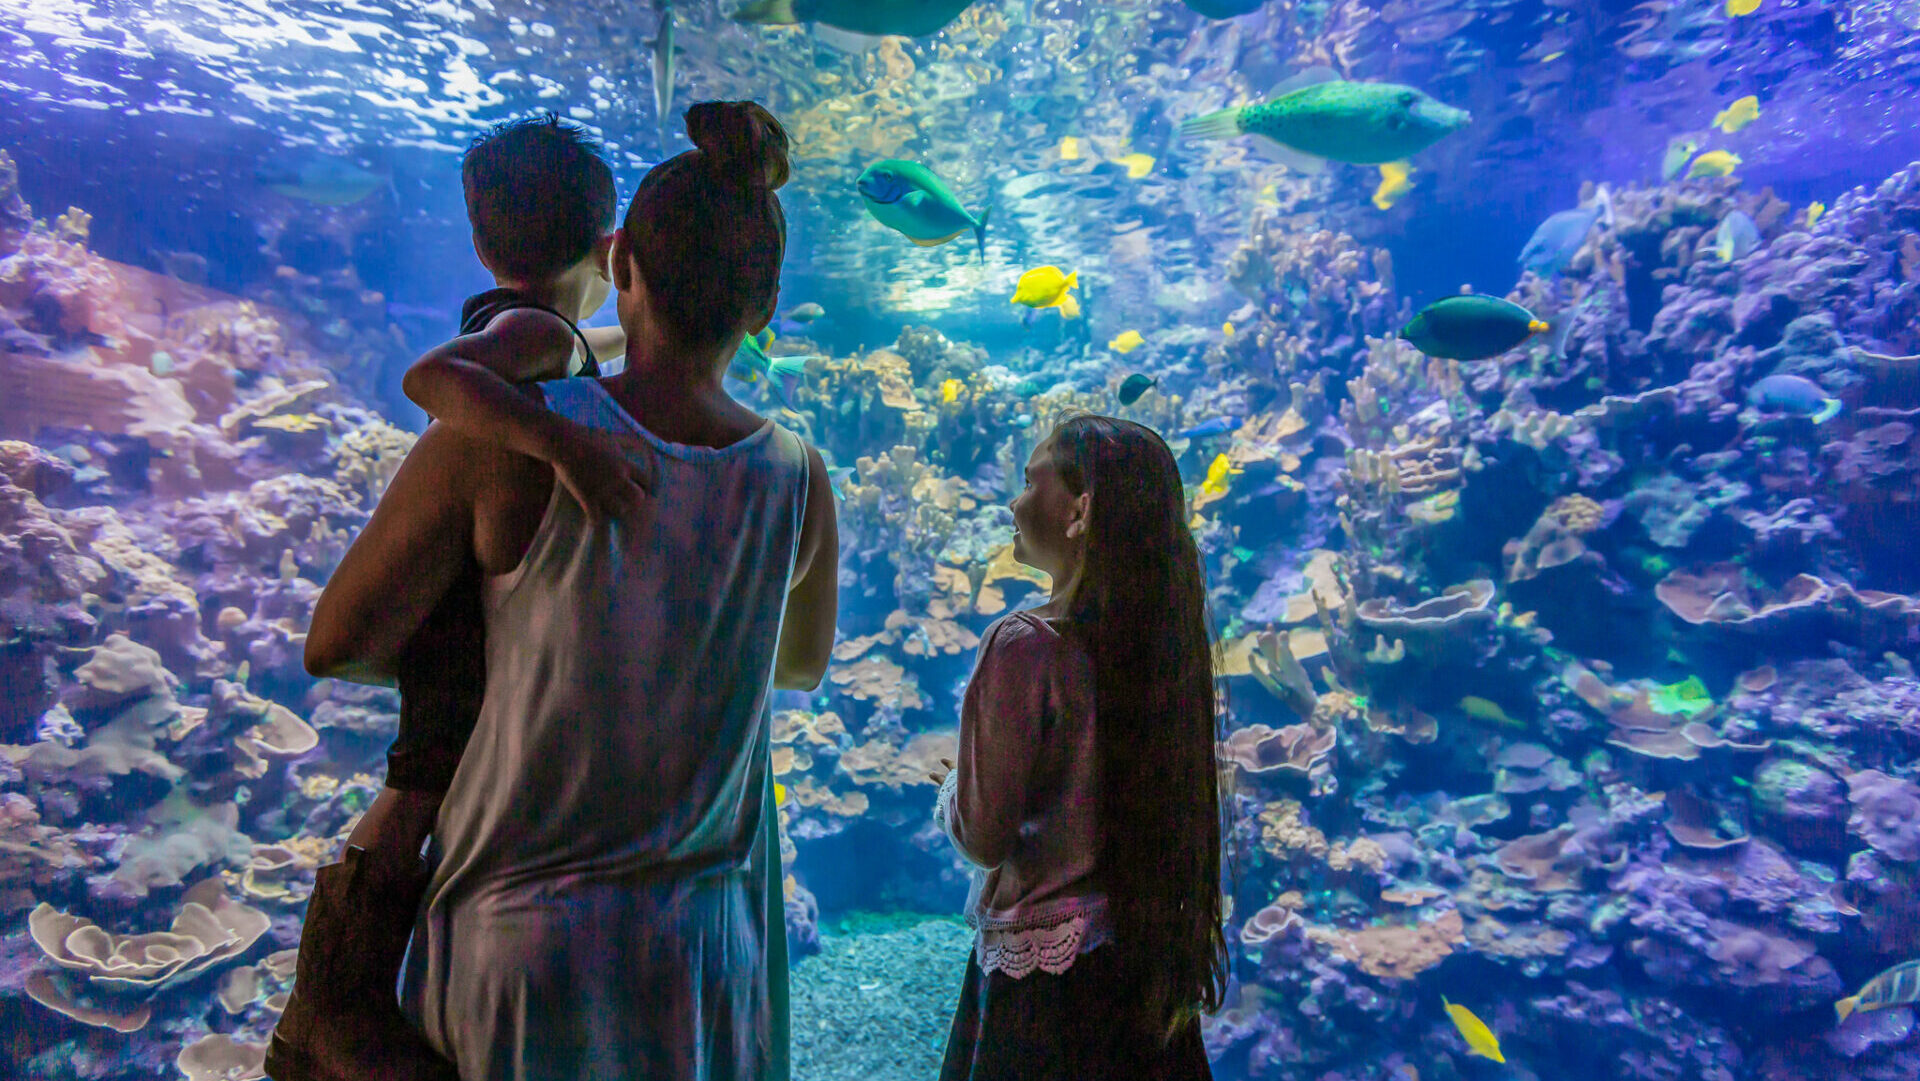 Maui Ocean Center, Aquarium